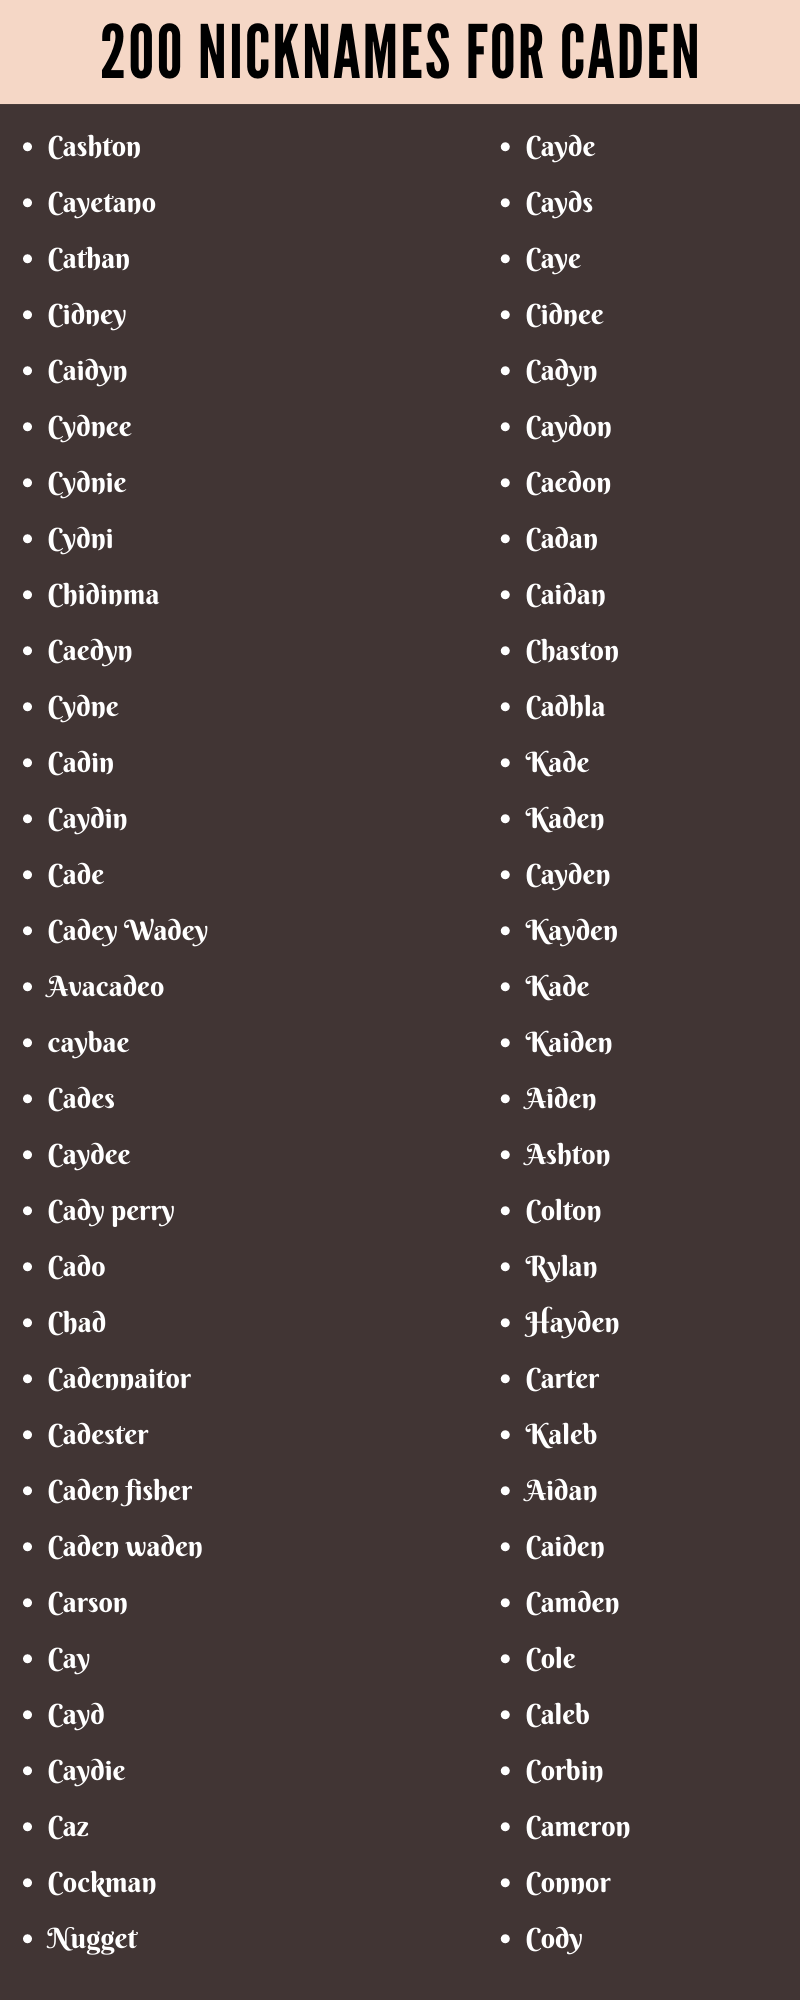 Nicknames for Caden